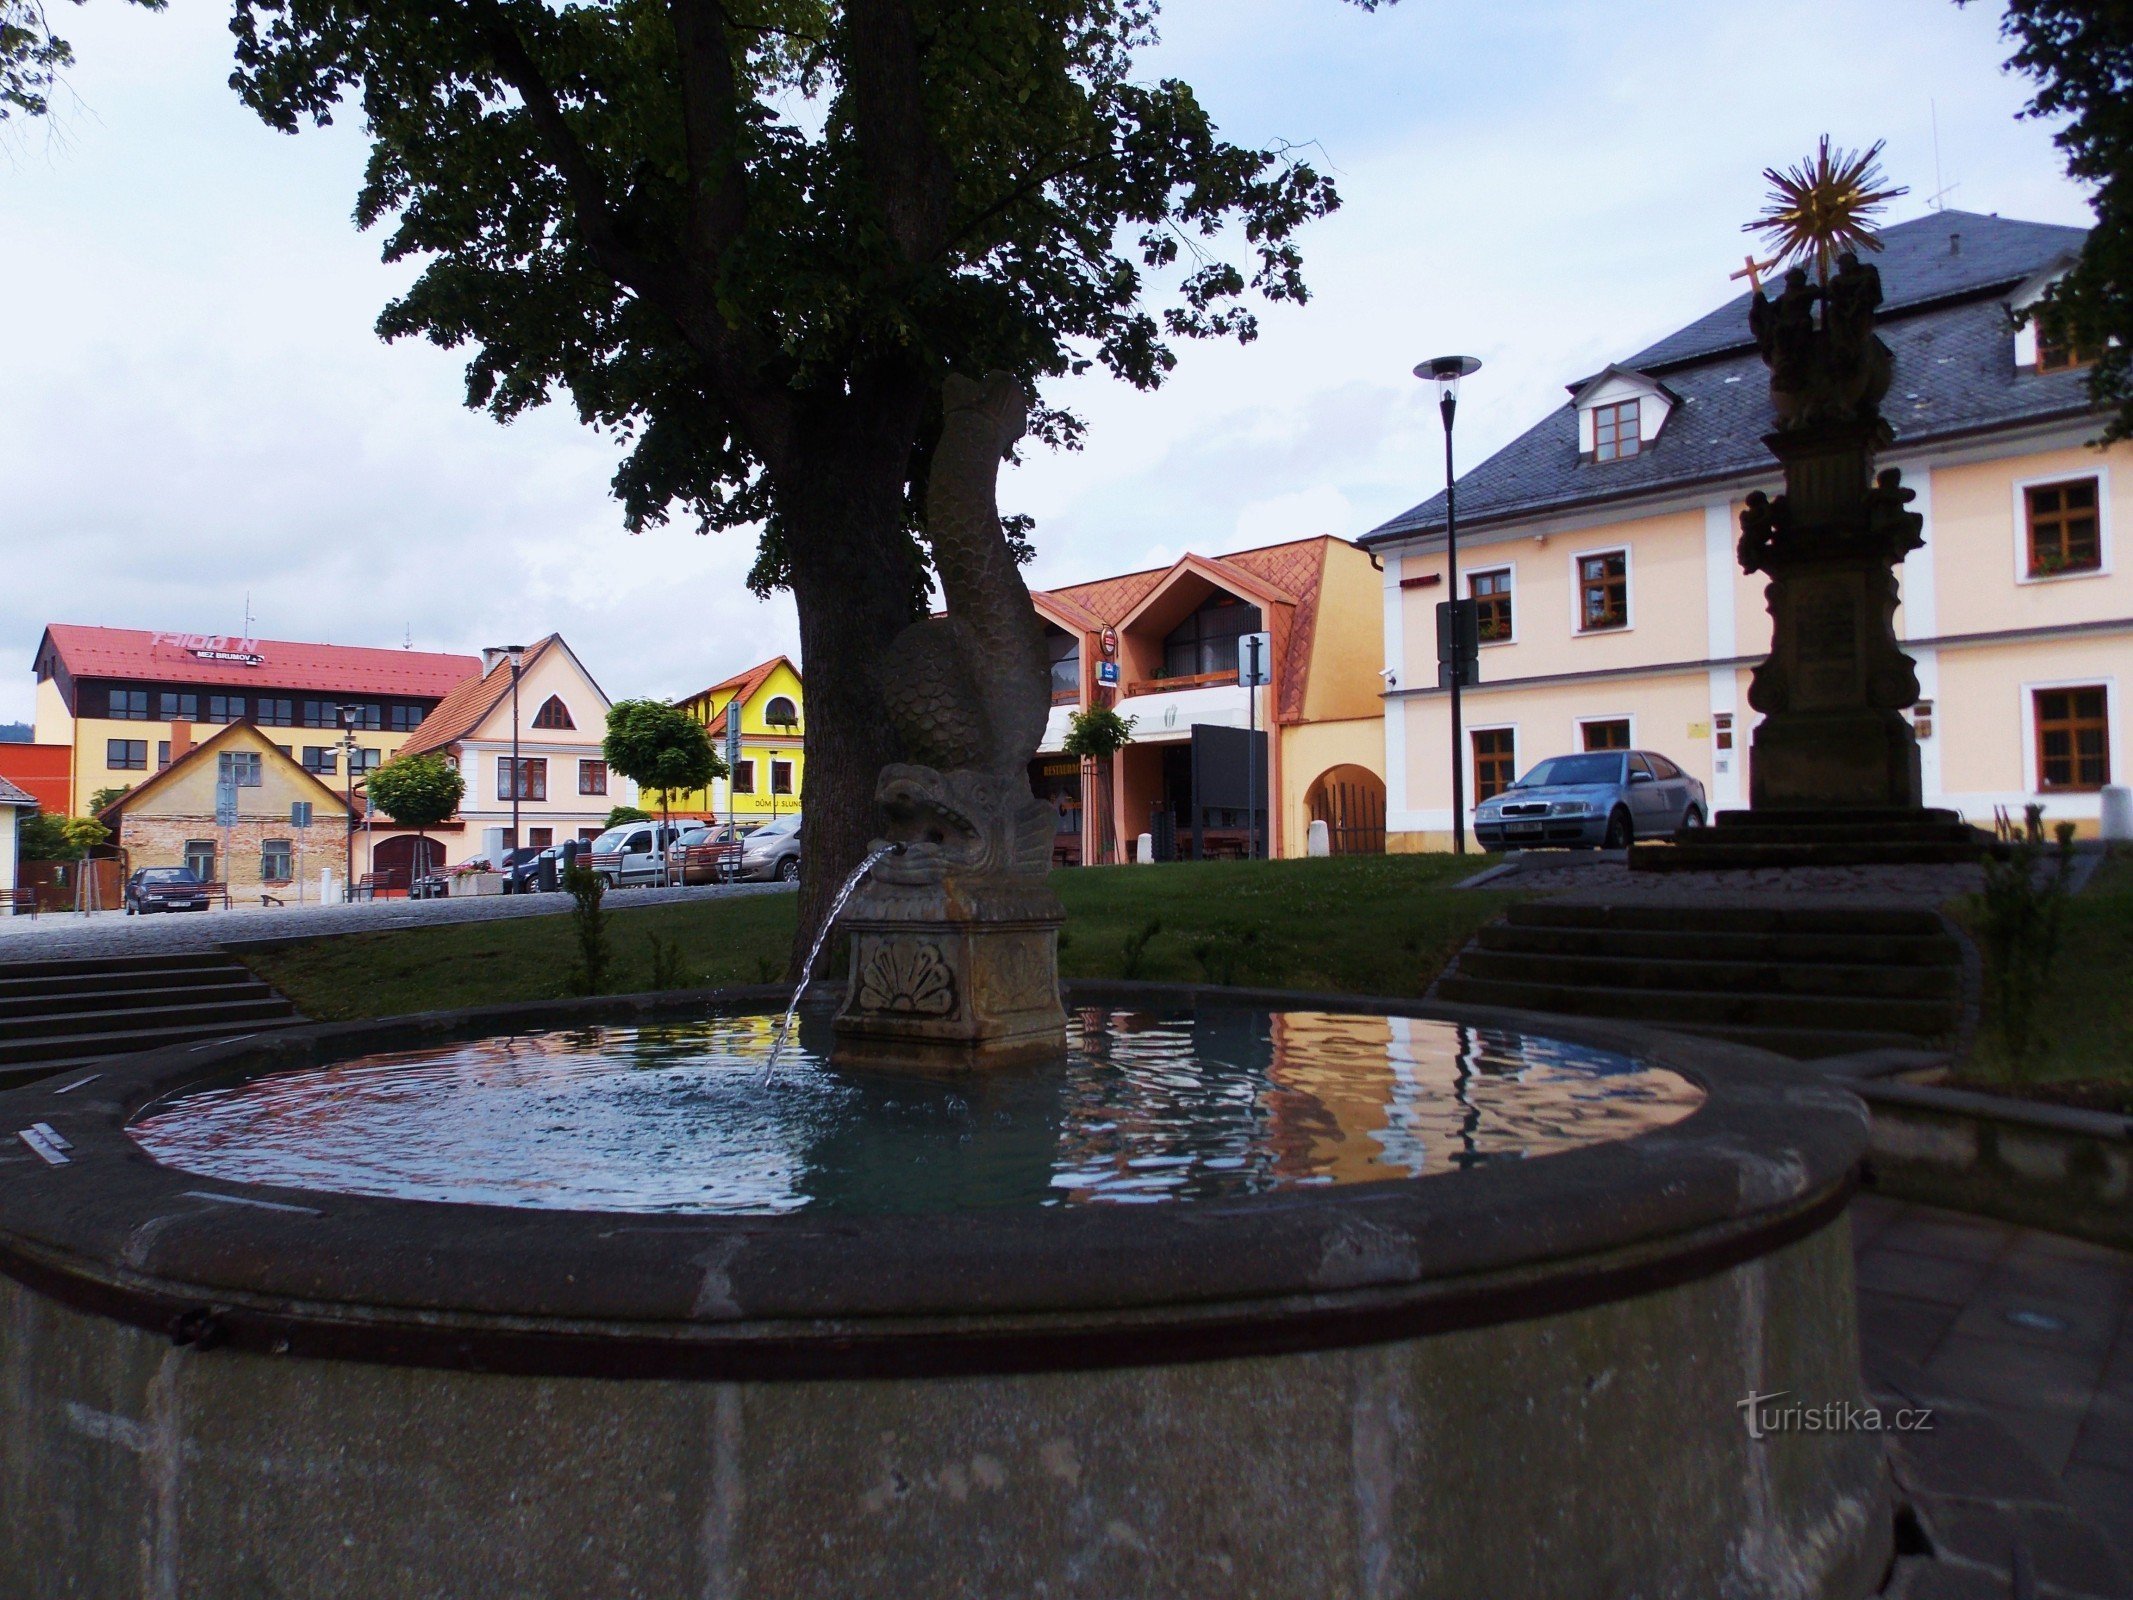 De fontein op het plein in Brumov